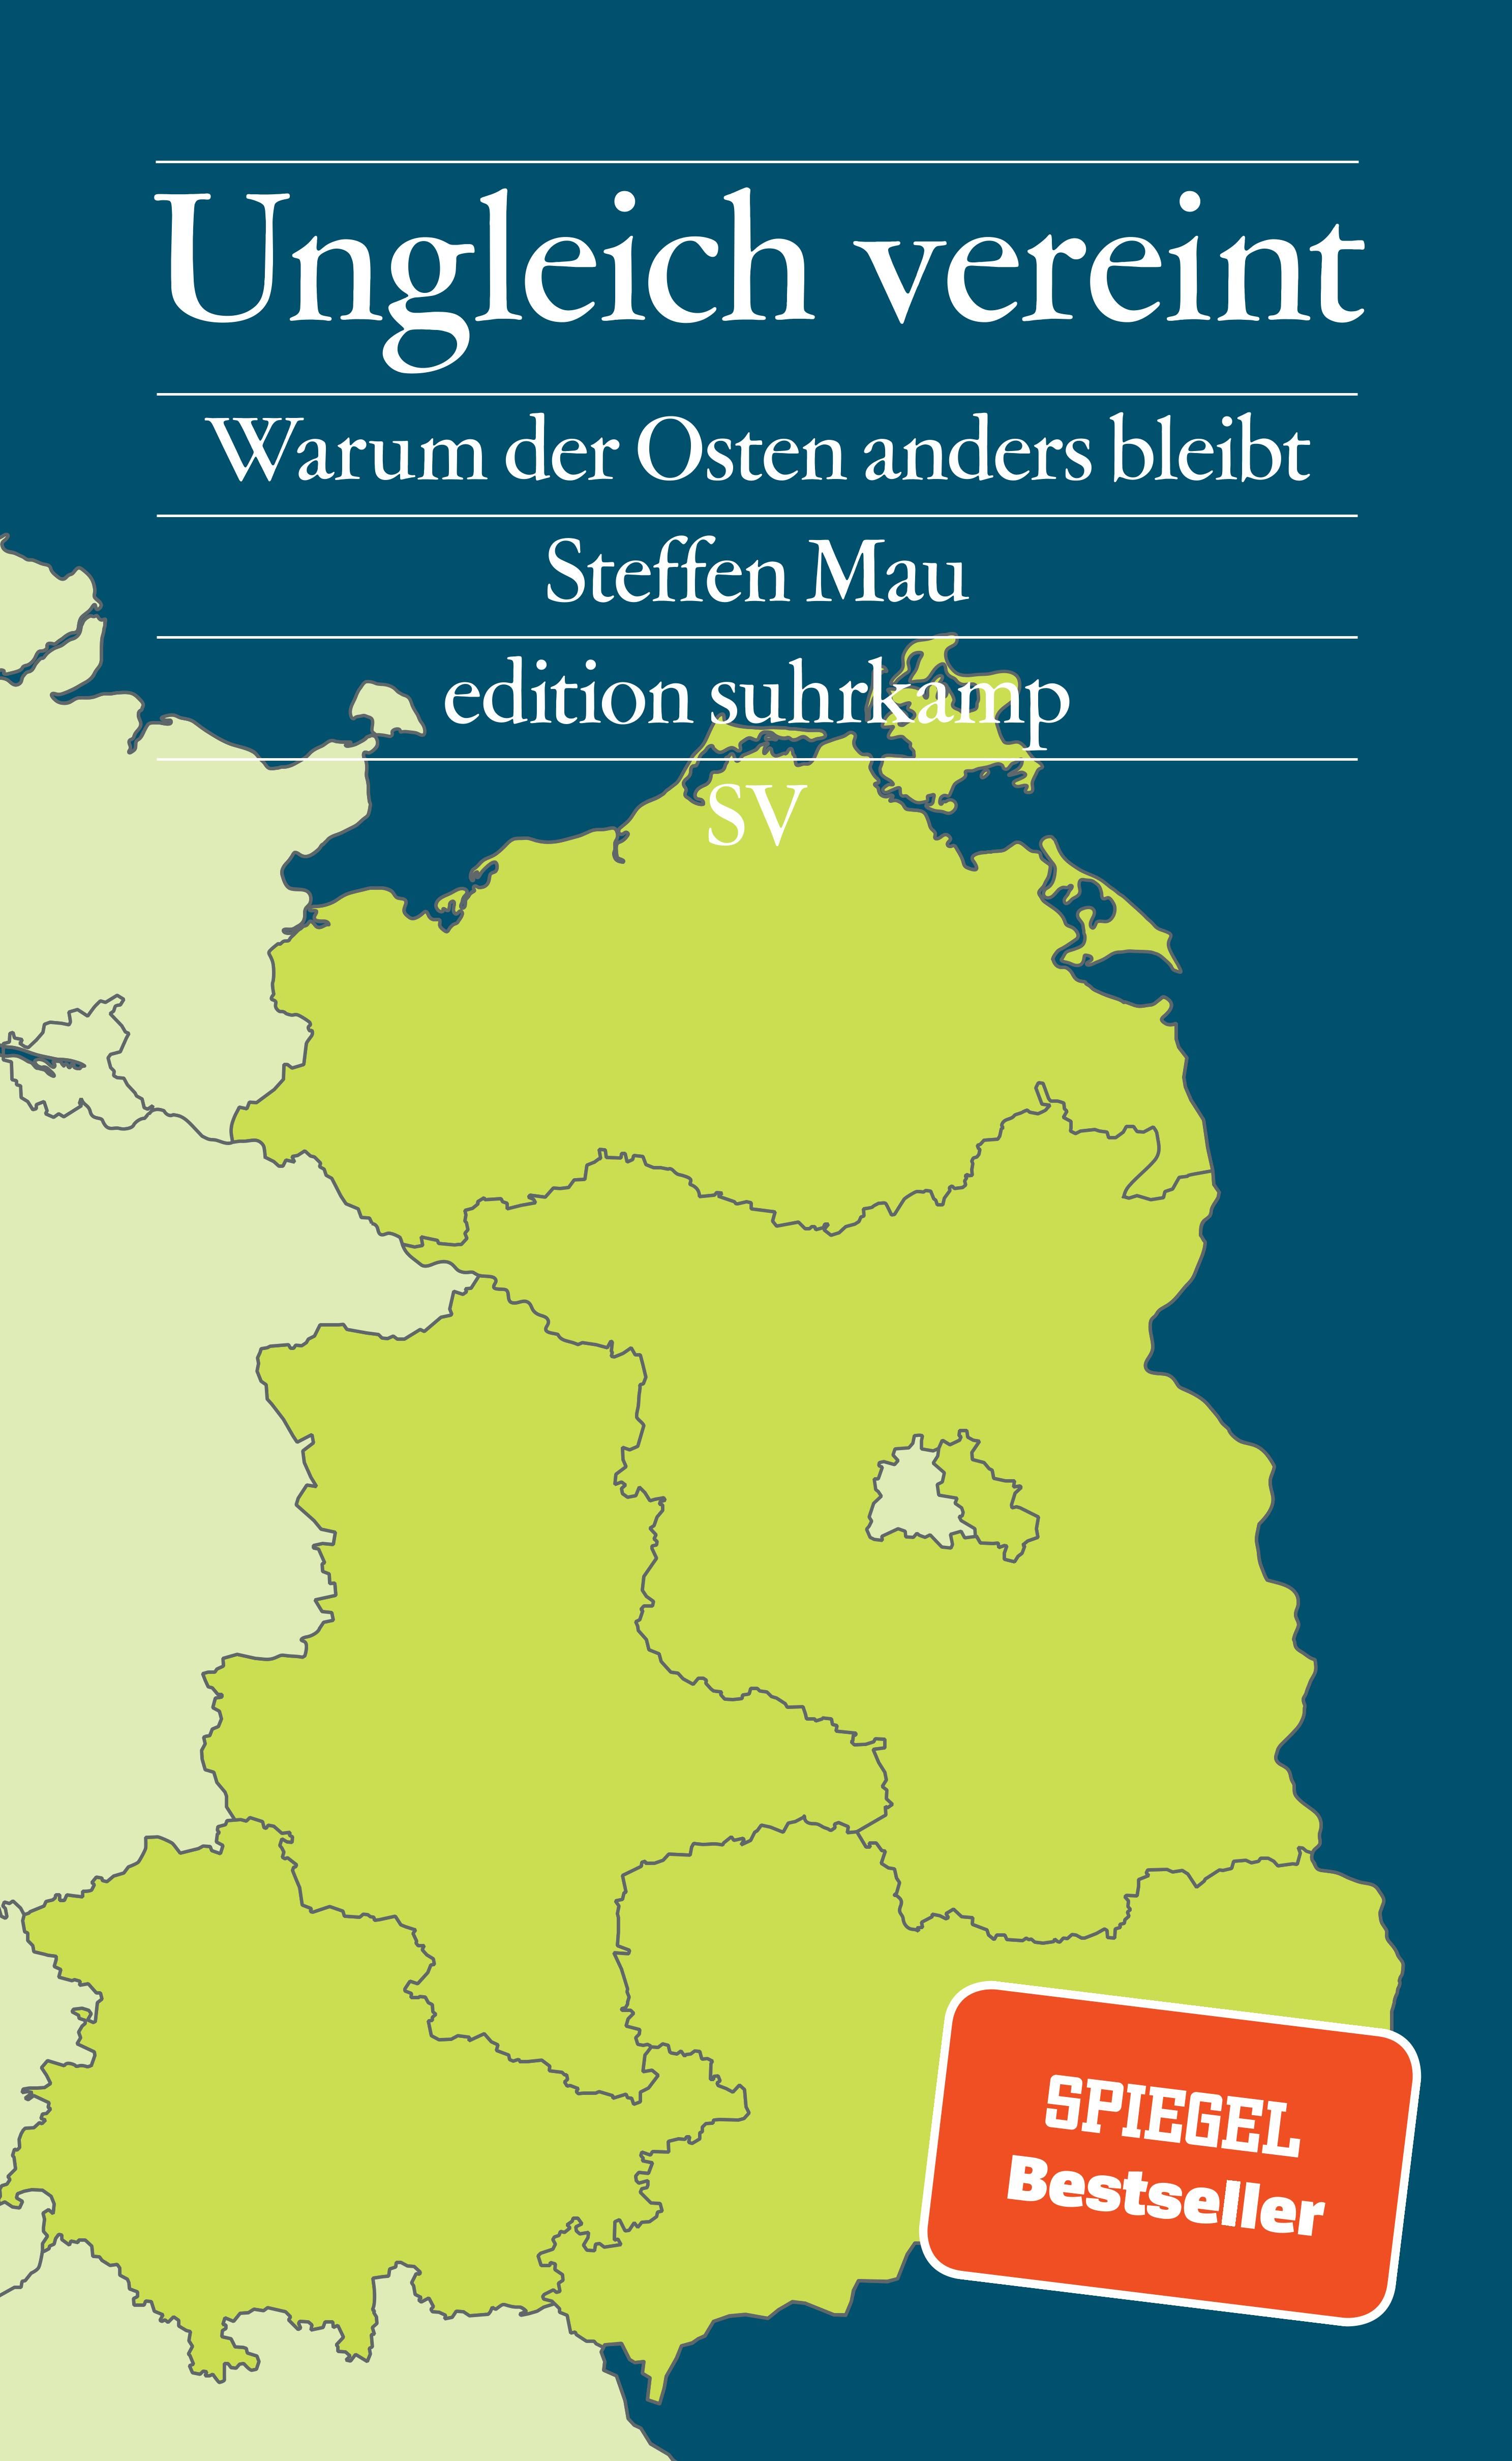 Ungleich vereint Cover: Landkartenausschnitt der ehemaligen DDR, Bundesländer farblich abgehoben von den umliegenden Bundesländern der ehemaligen BRD, Badge: Spiegel Bestseller